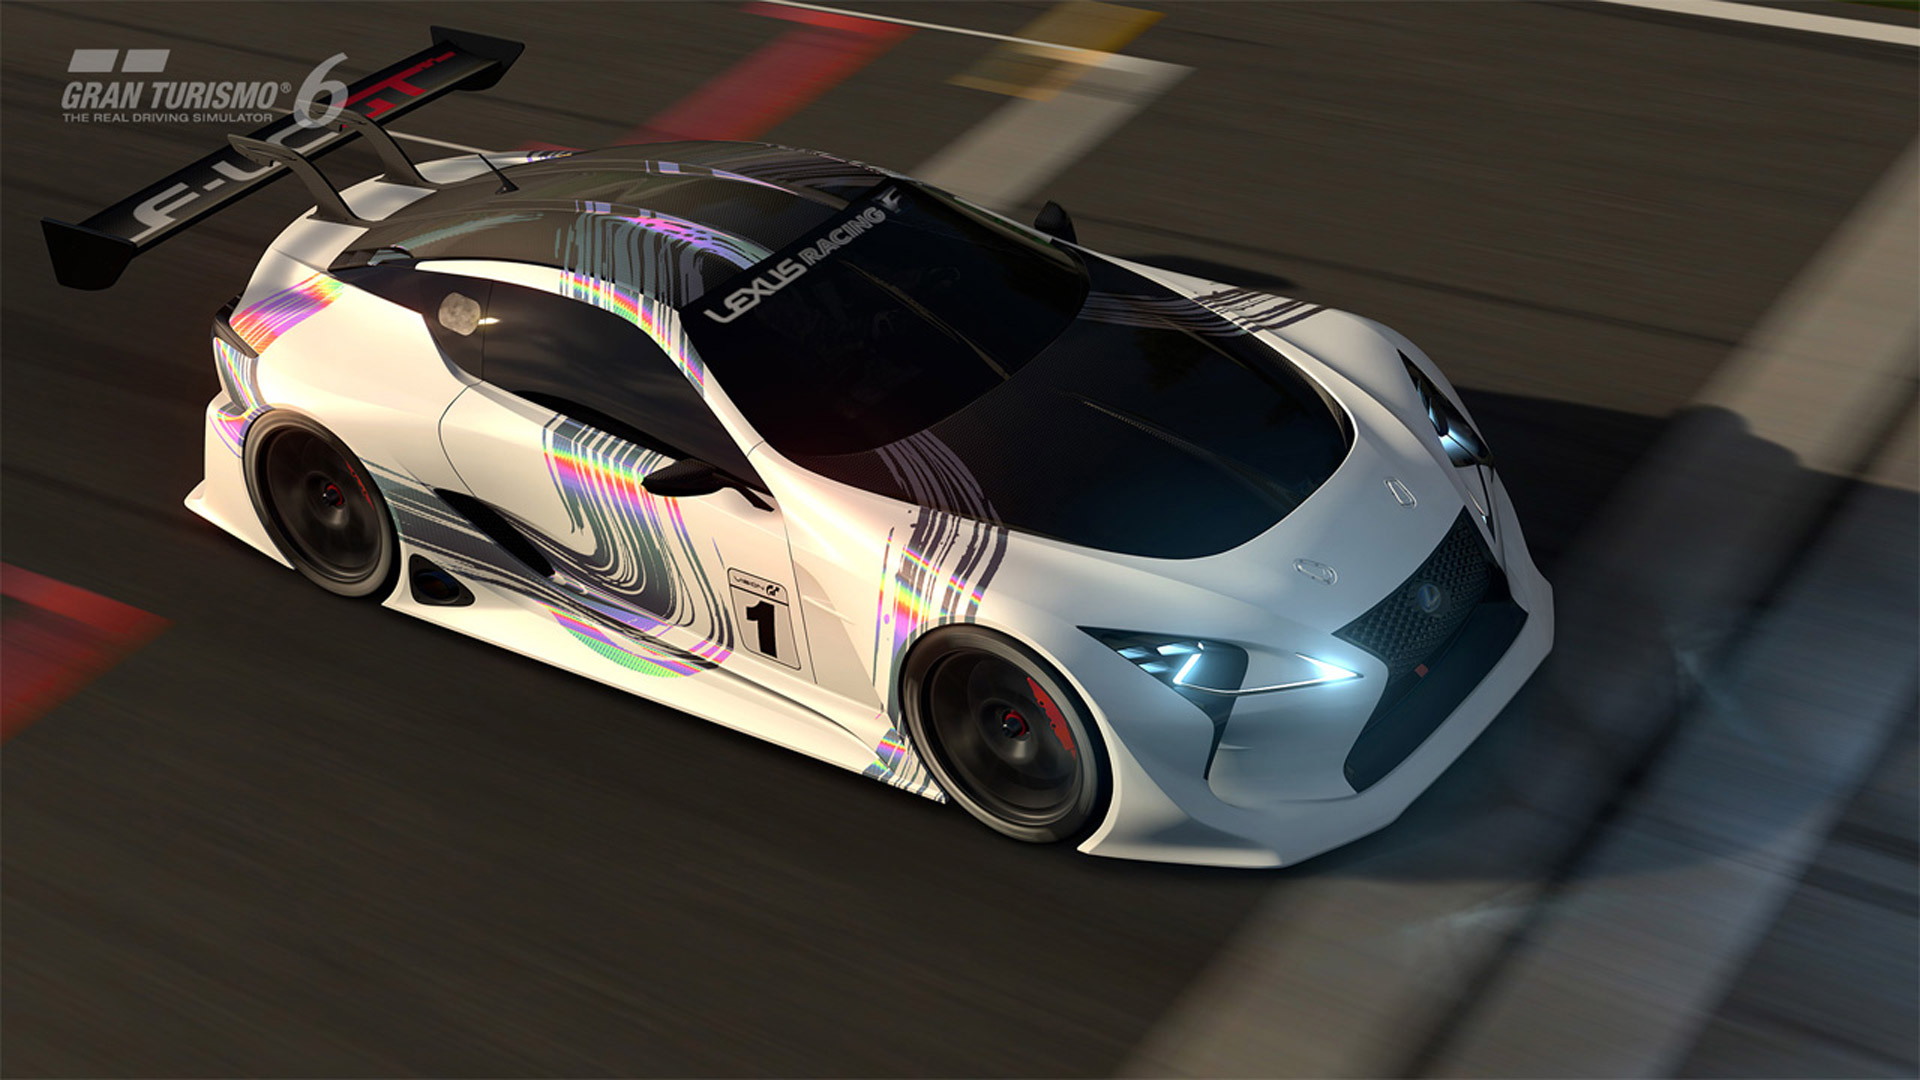 Lexus LF-LC GT Vision Gran Turismo concept